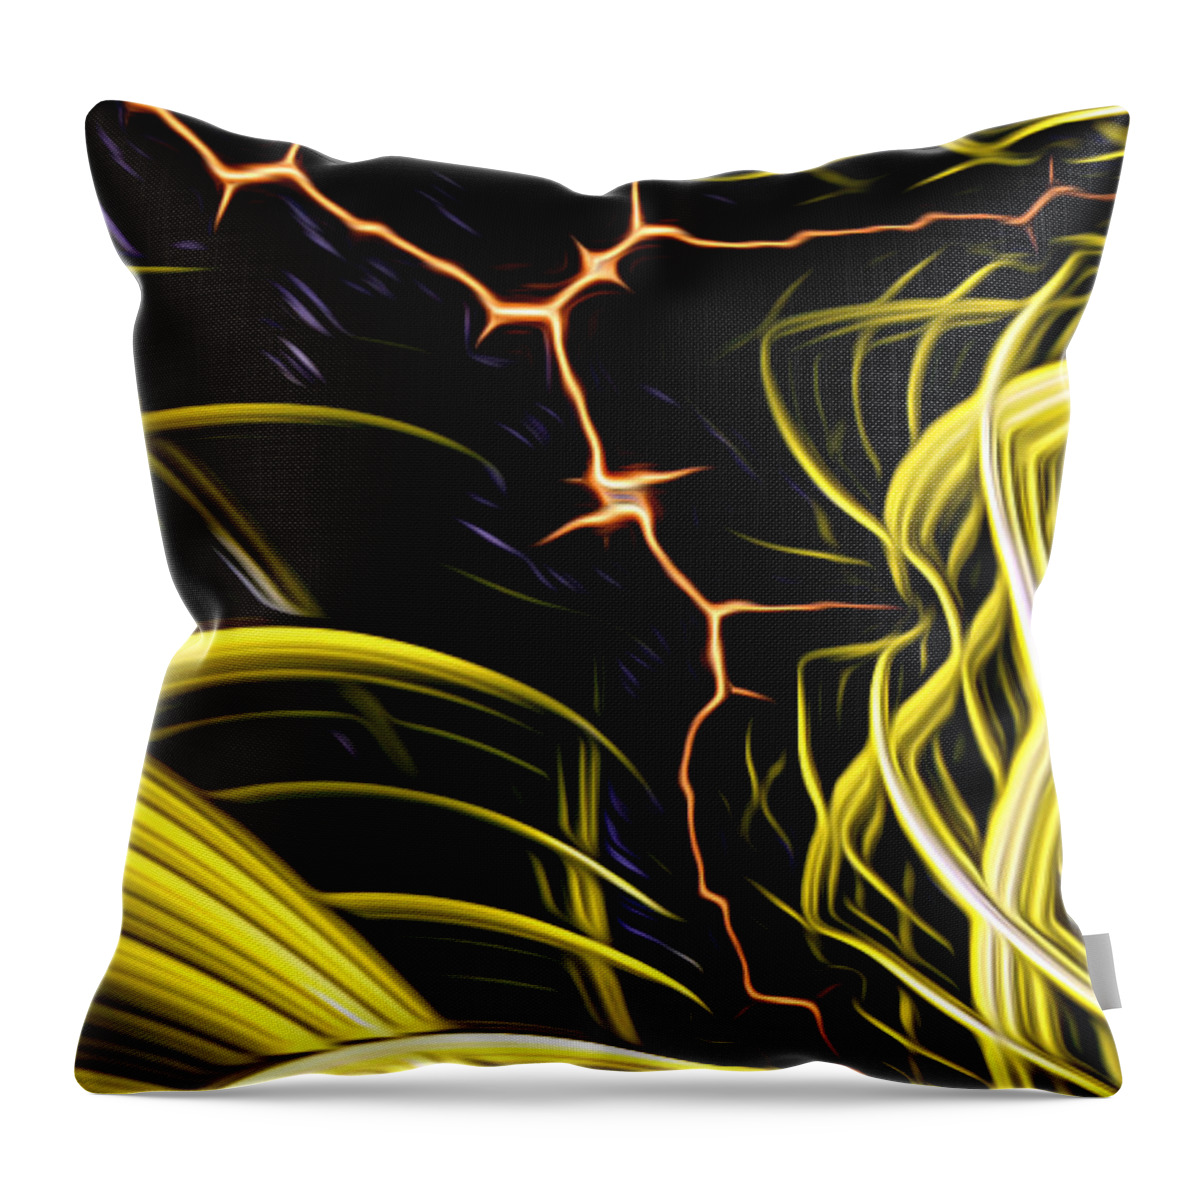 Art Throw Pillow featuring the digital art Bolt Through by Vix Edwards